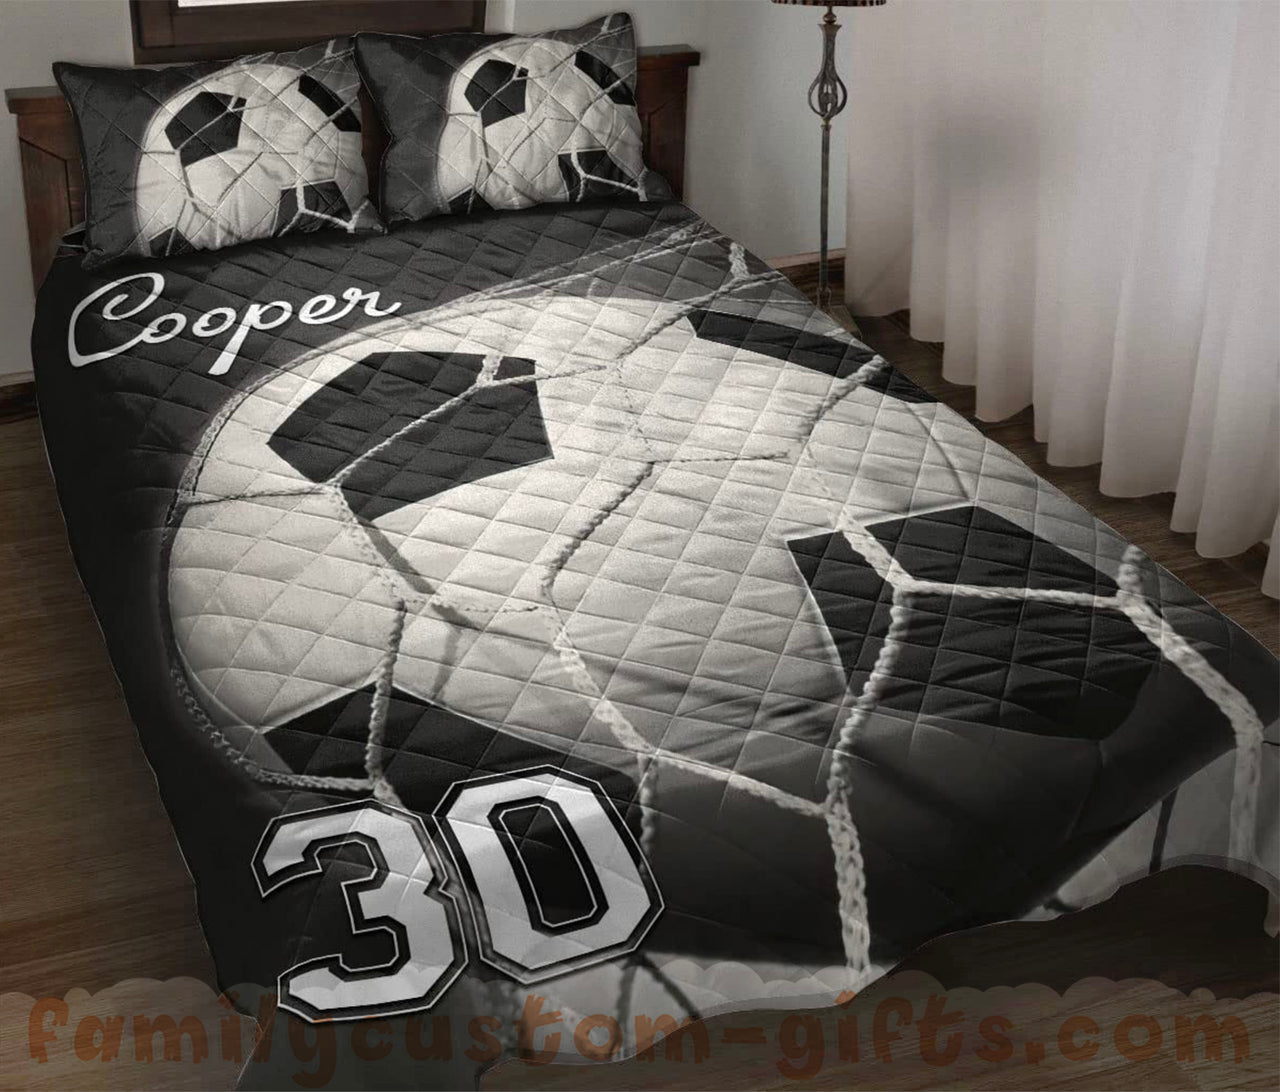 Custom Quilt Sets Soccer Goals What I Love is Scoring Premium Quilt Bedding for Boys Girls Men Women